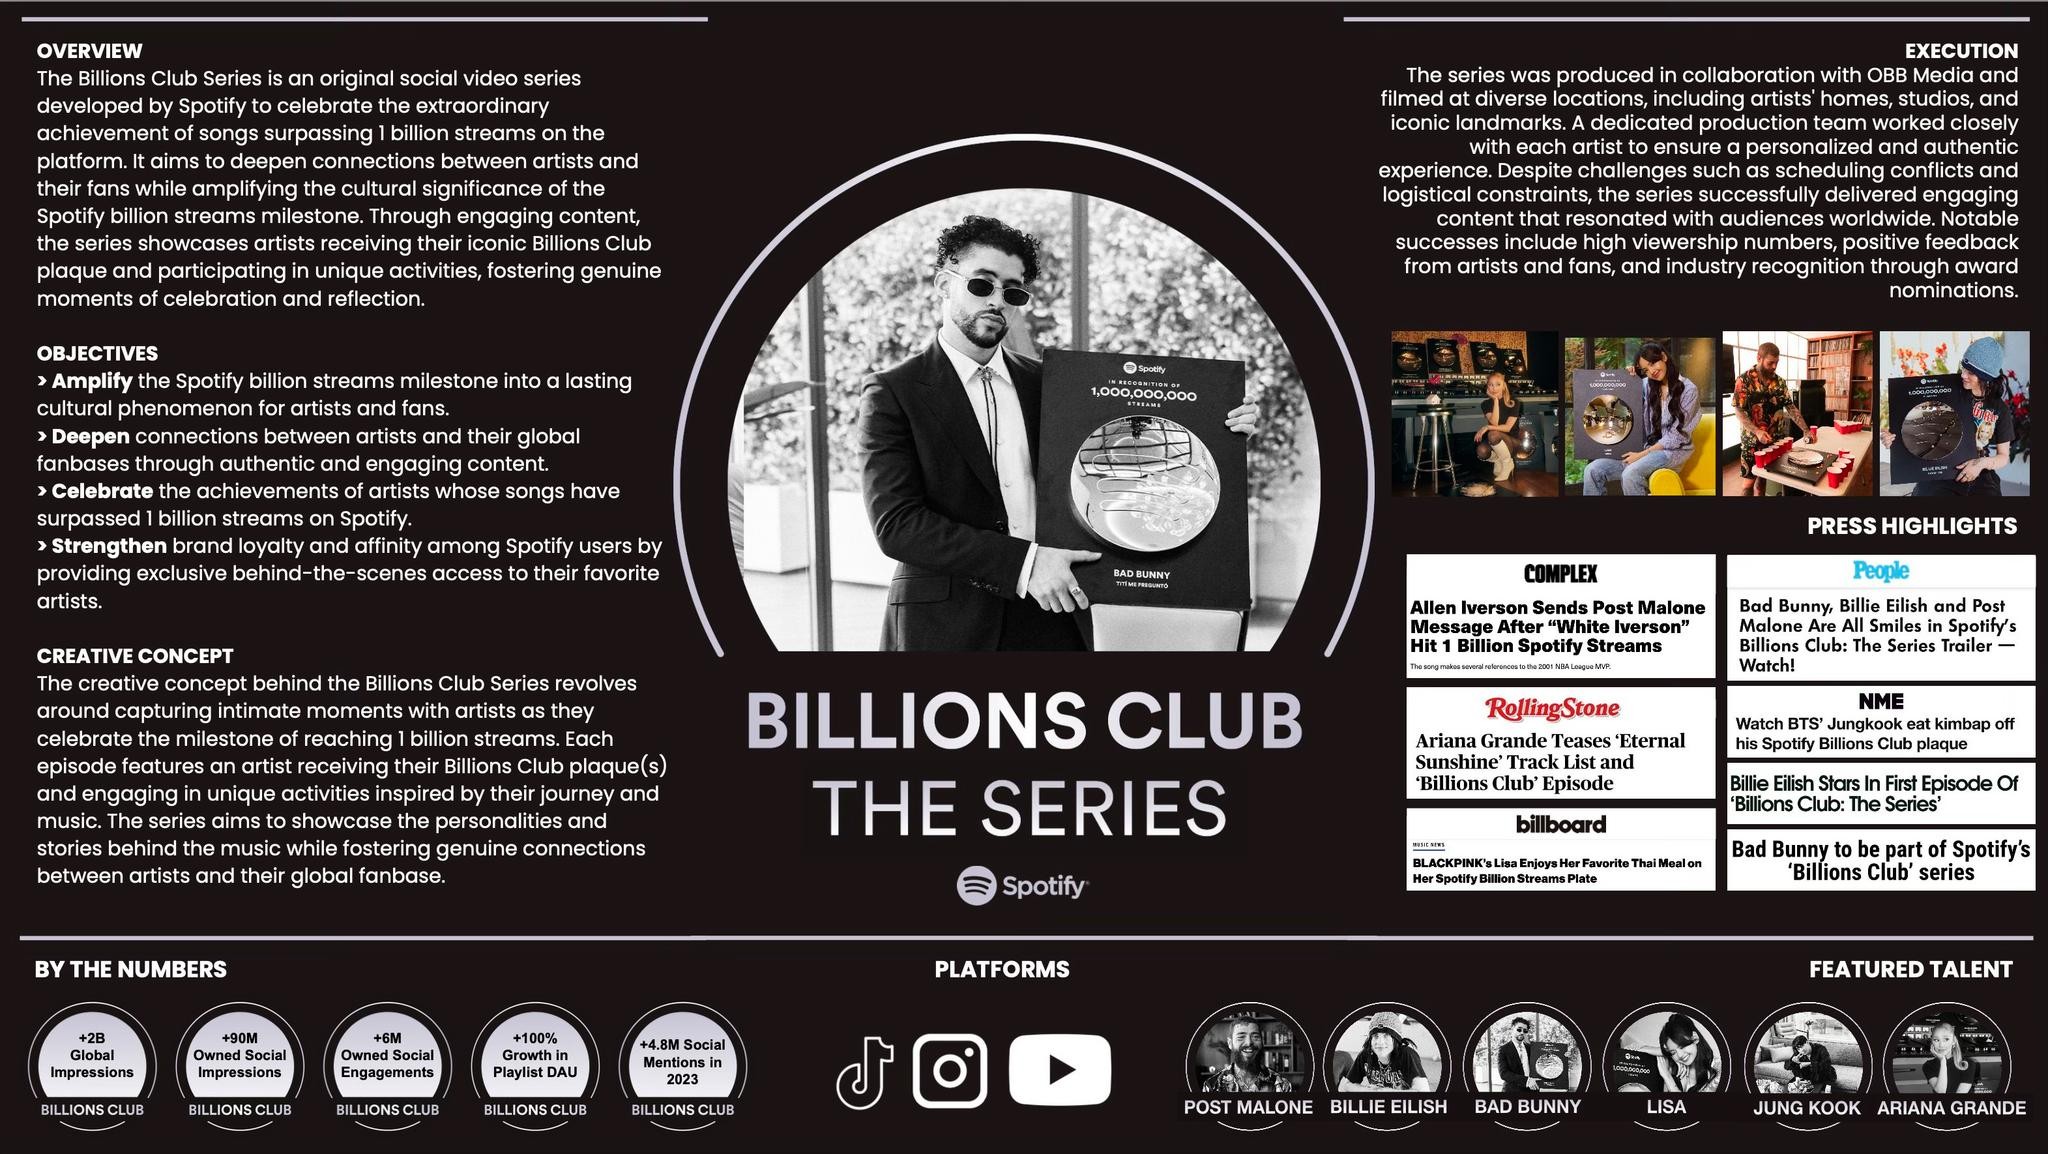 Spotify Billions Club: The Series